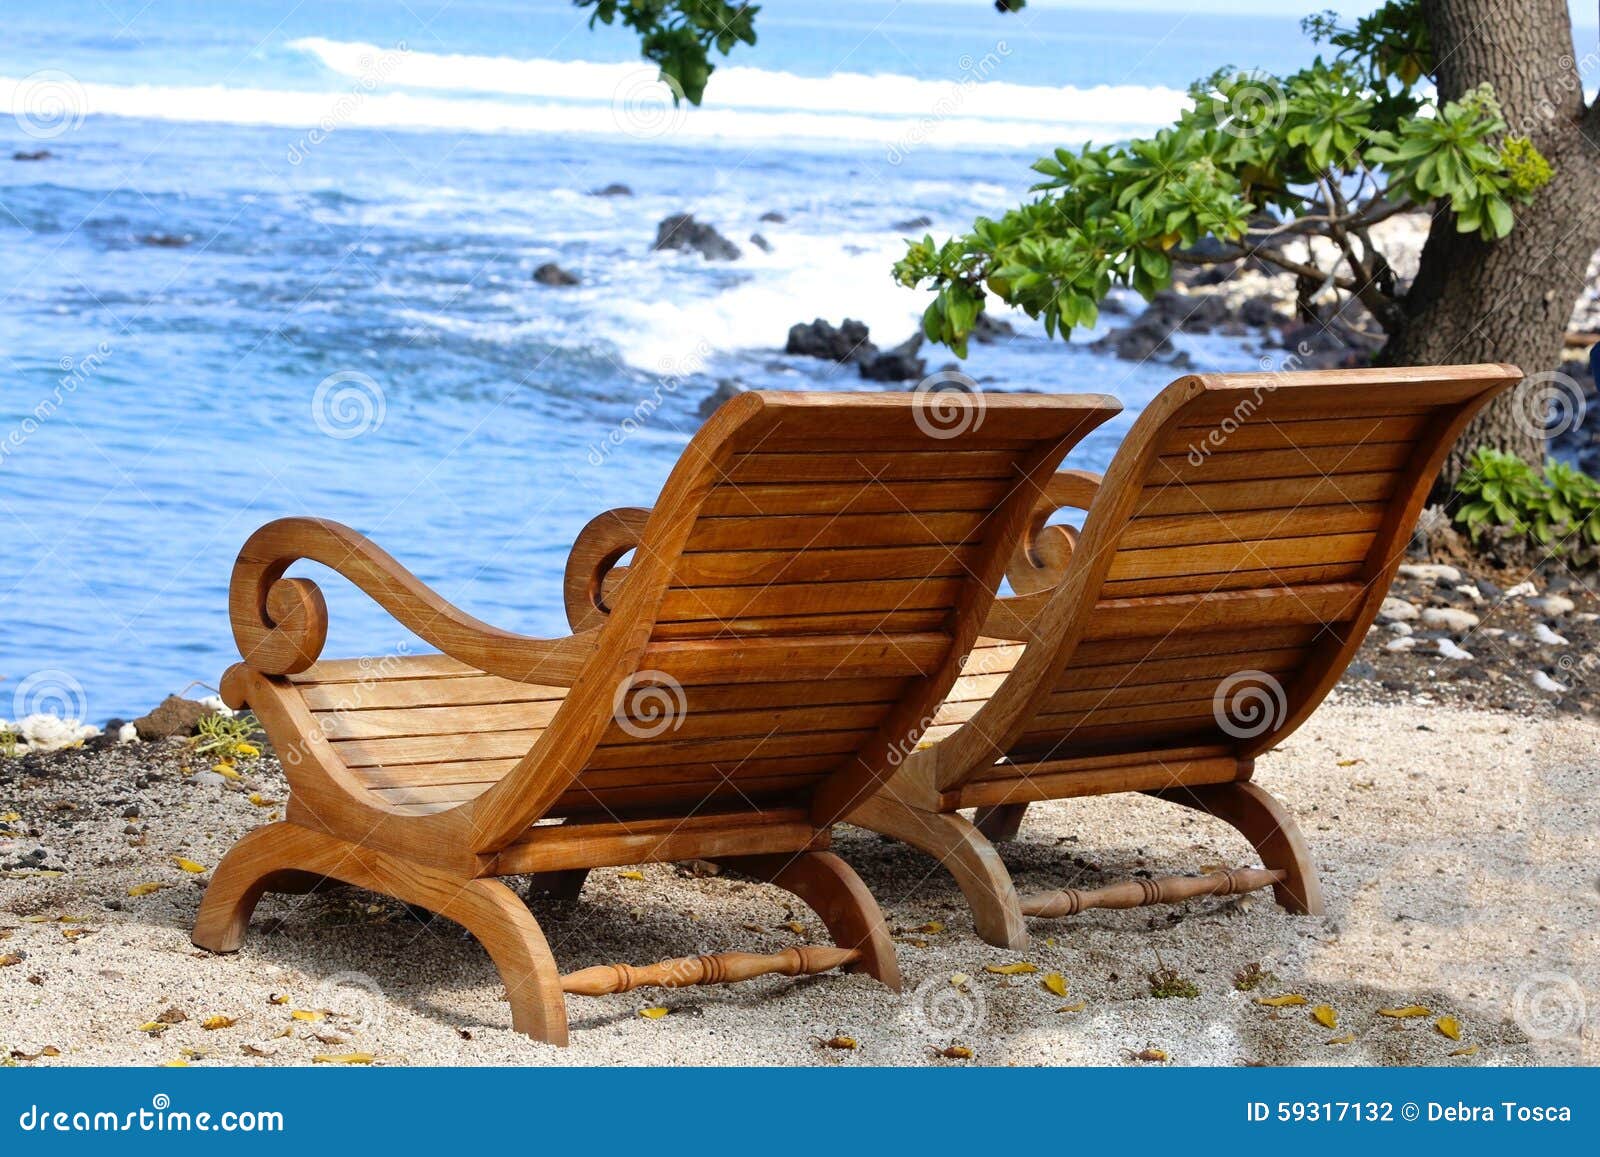 Adirondack Chairs Beach Hawaii Stock Photo - Image: 59317132